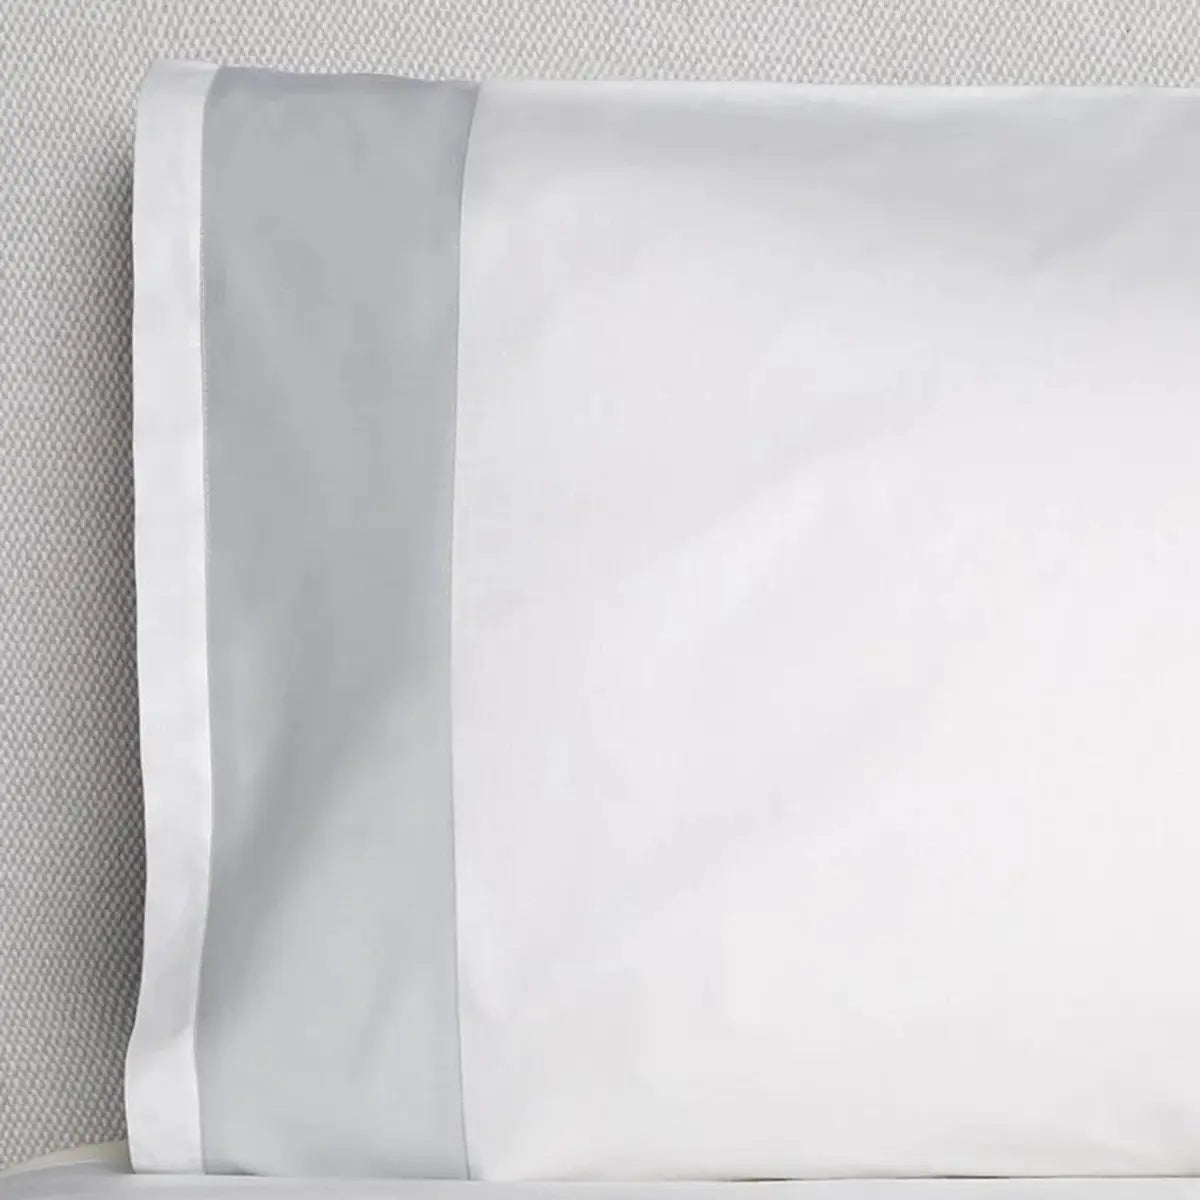 Sferra Casida Pillowcase in White/Lunar